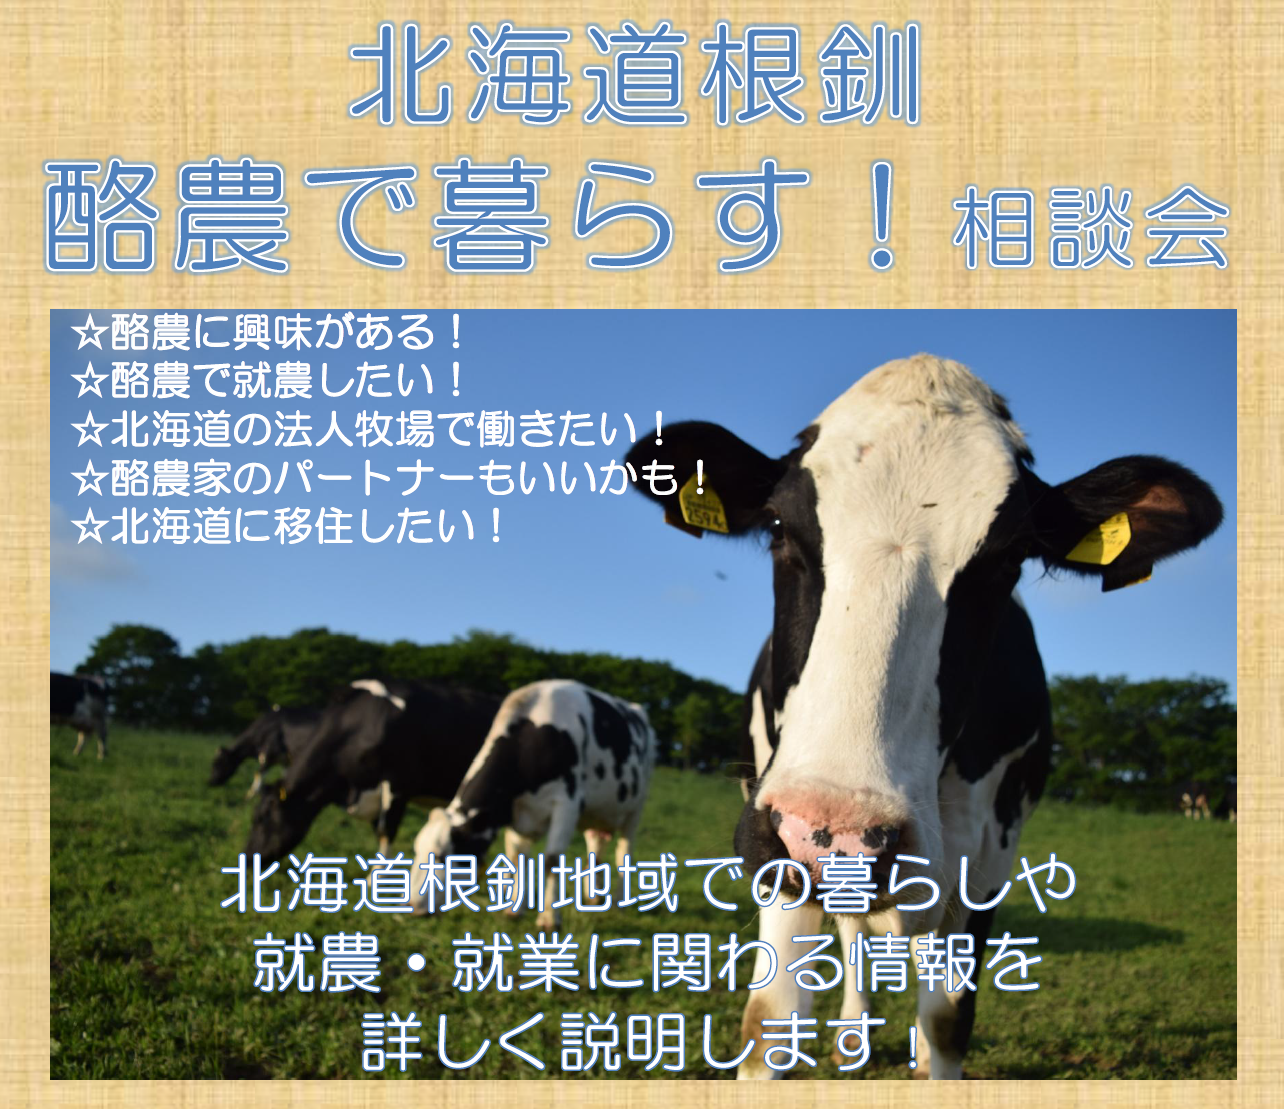 北海道根釧 酪農で暮らす！相談会 | 移住関連イベント情報